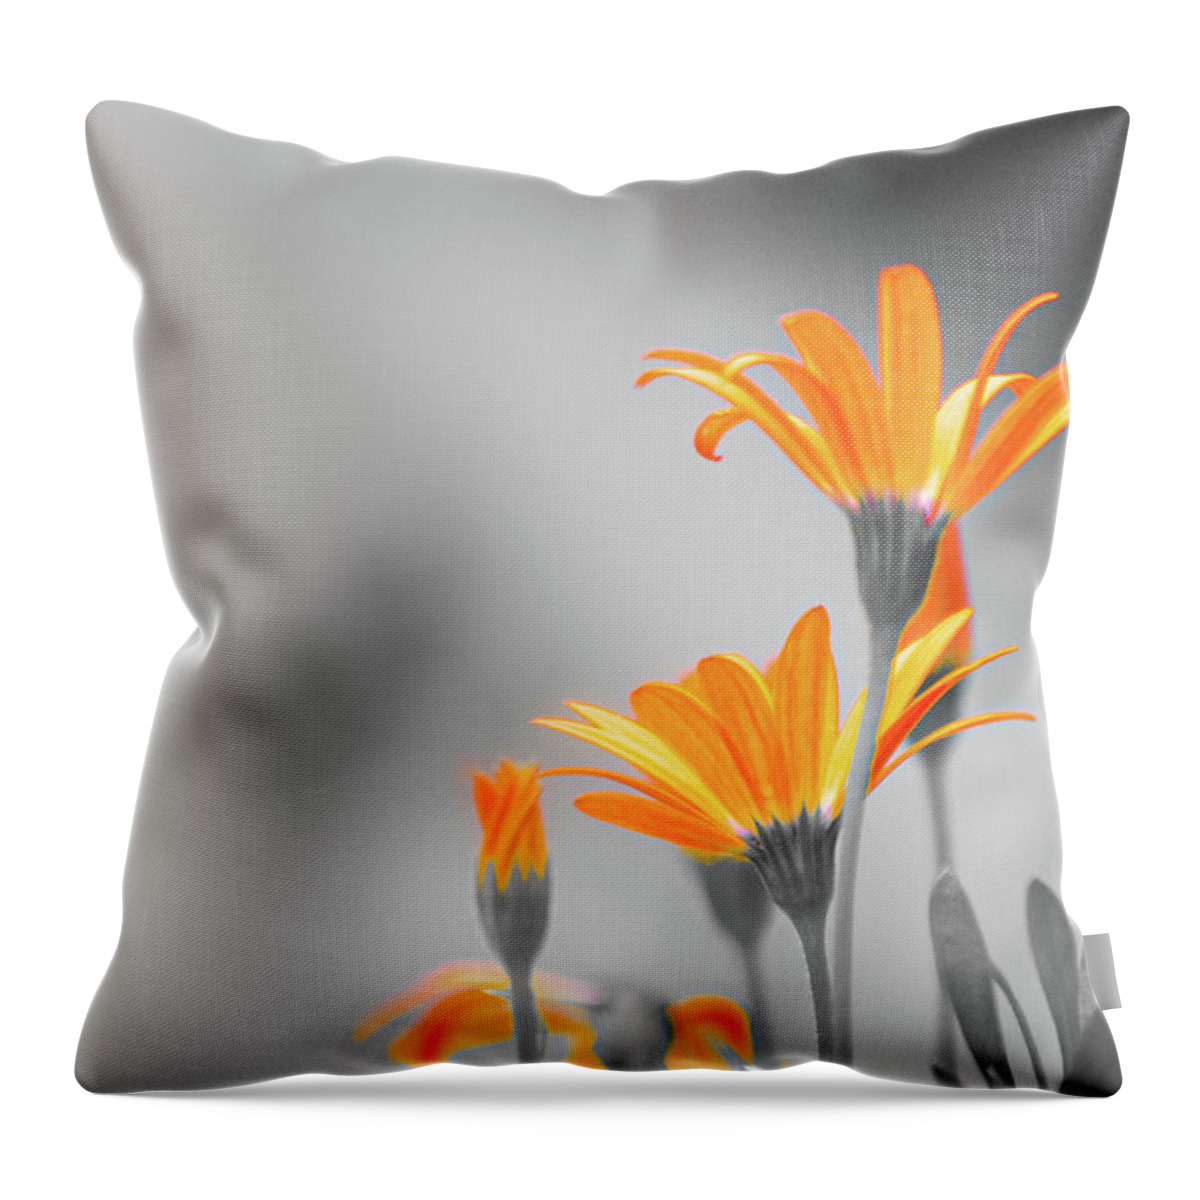 Flower Throw Pillow featuring the photograph Orange by Maureen Plitt